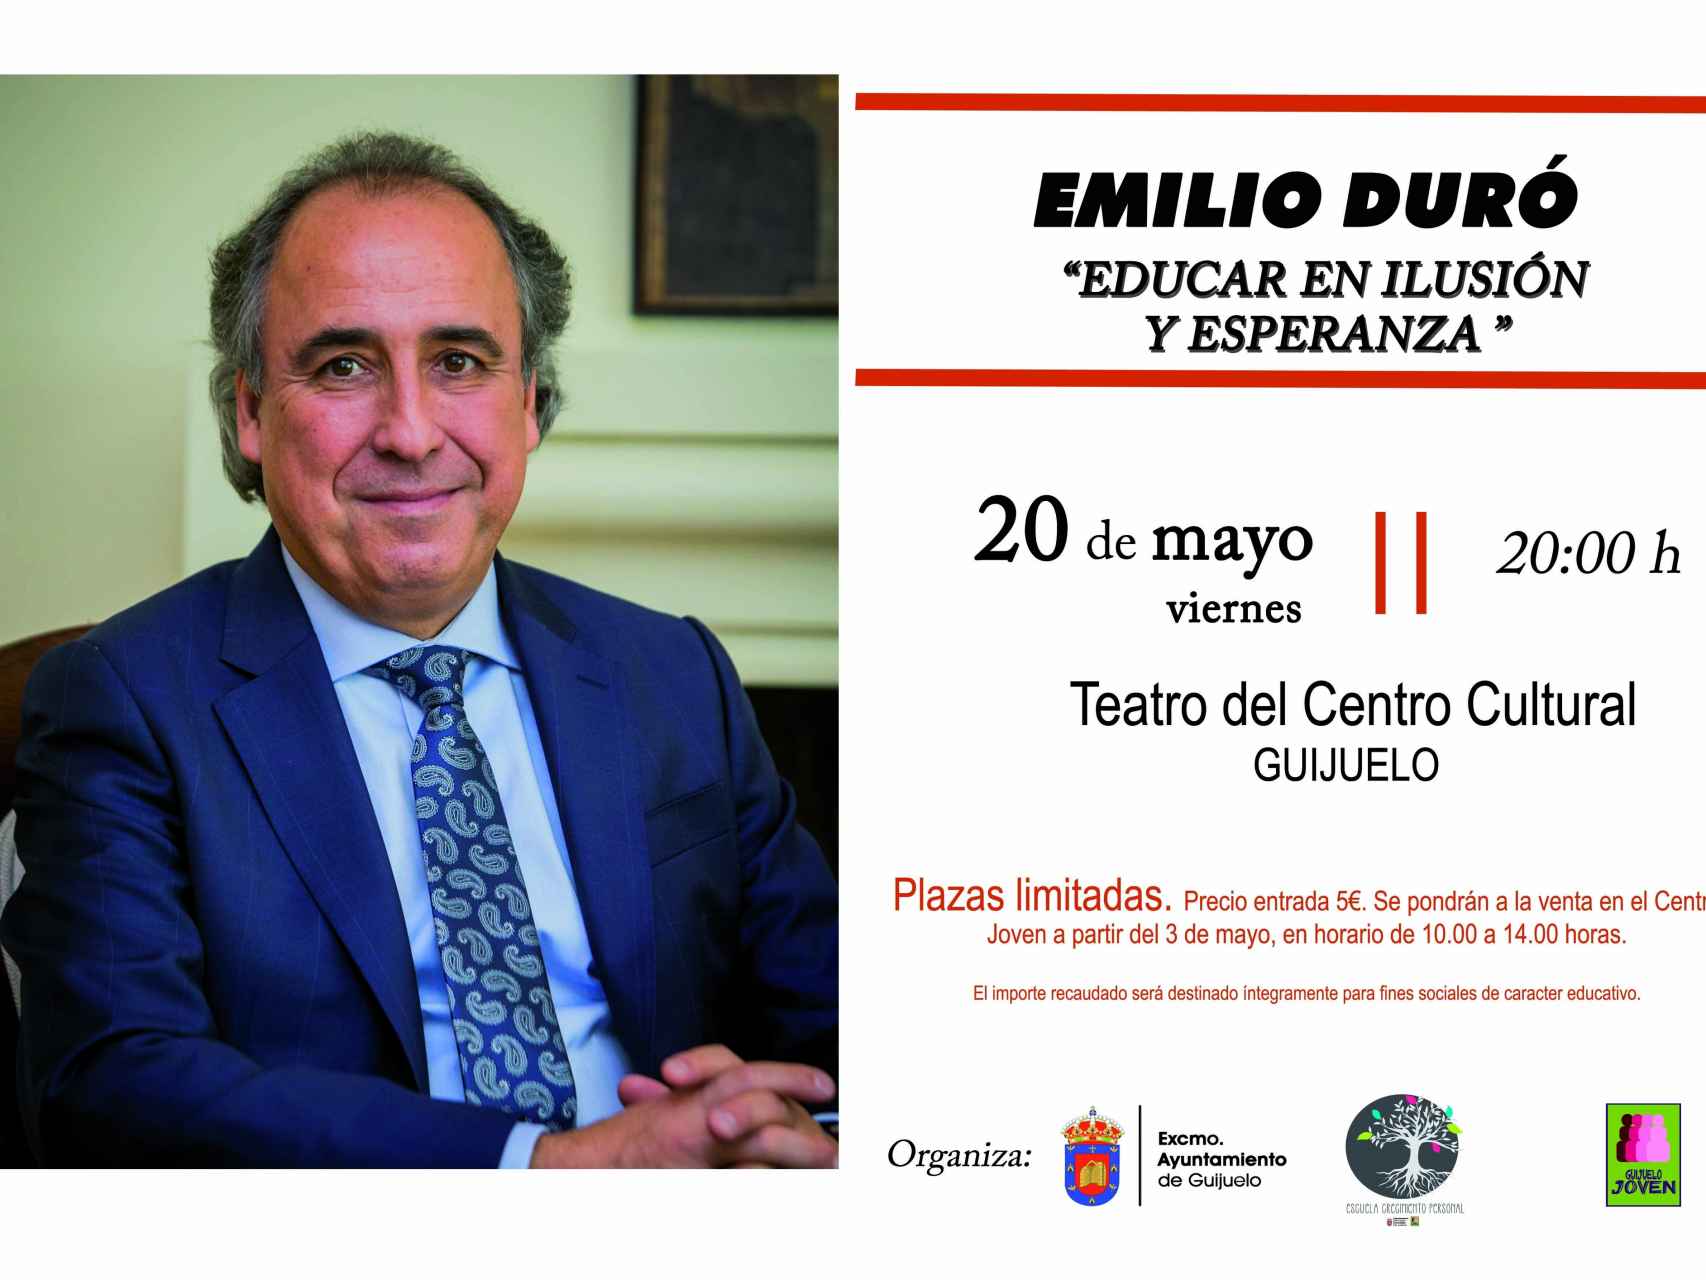 Conferencia Emilio Duró en Guijuelo